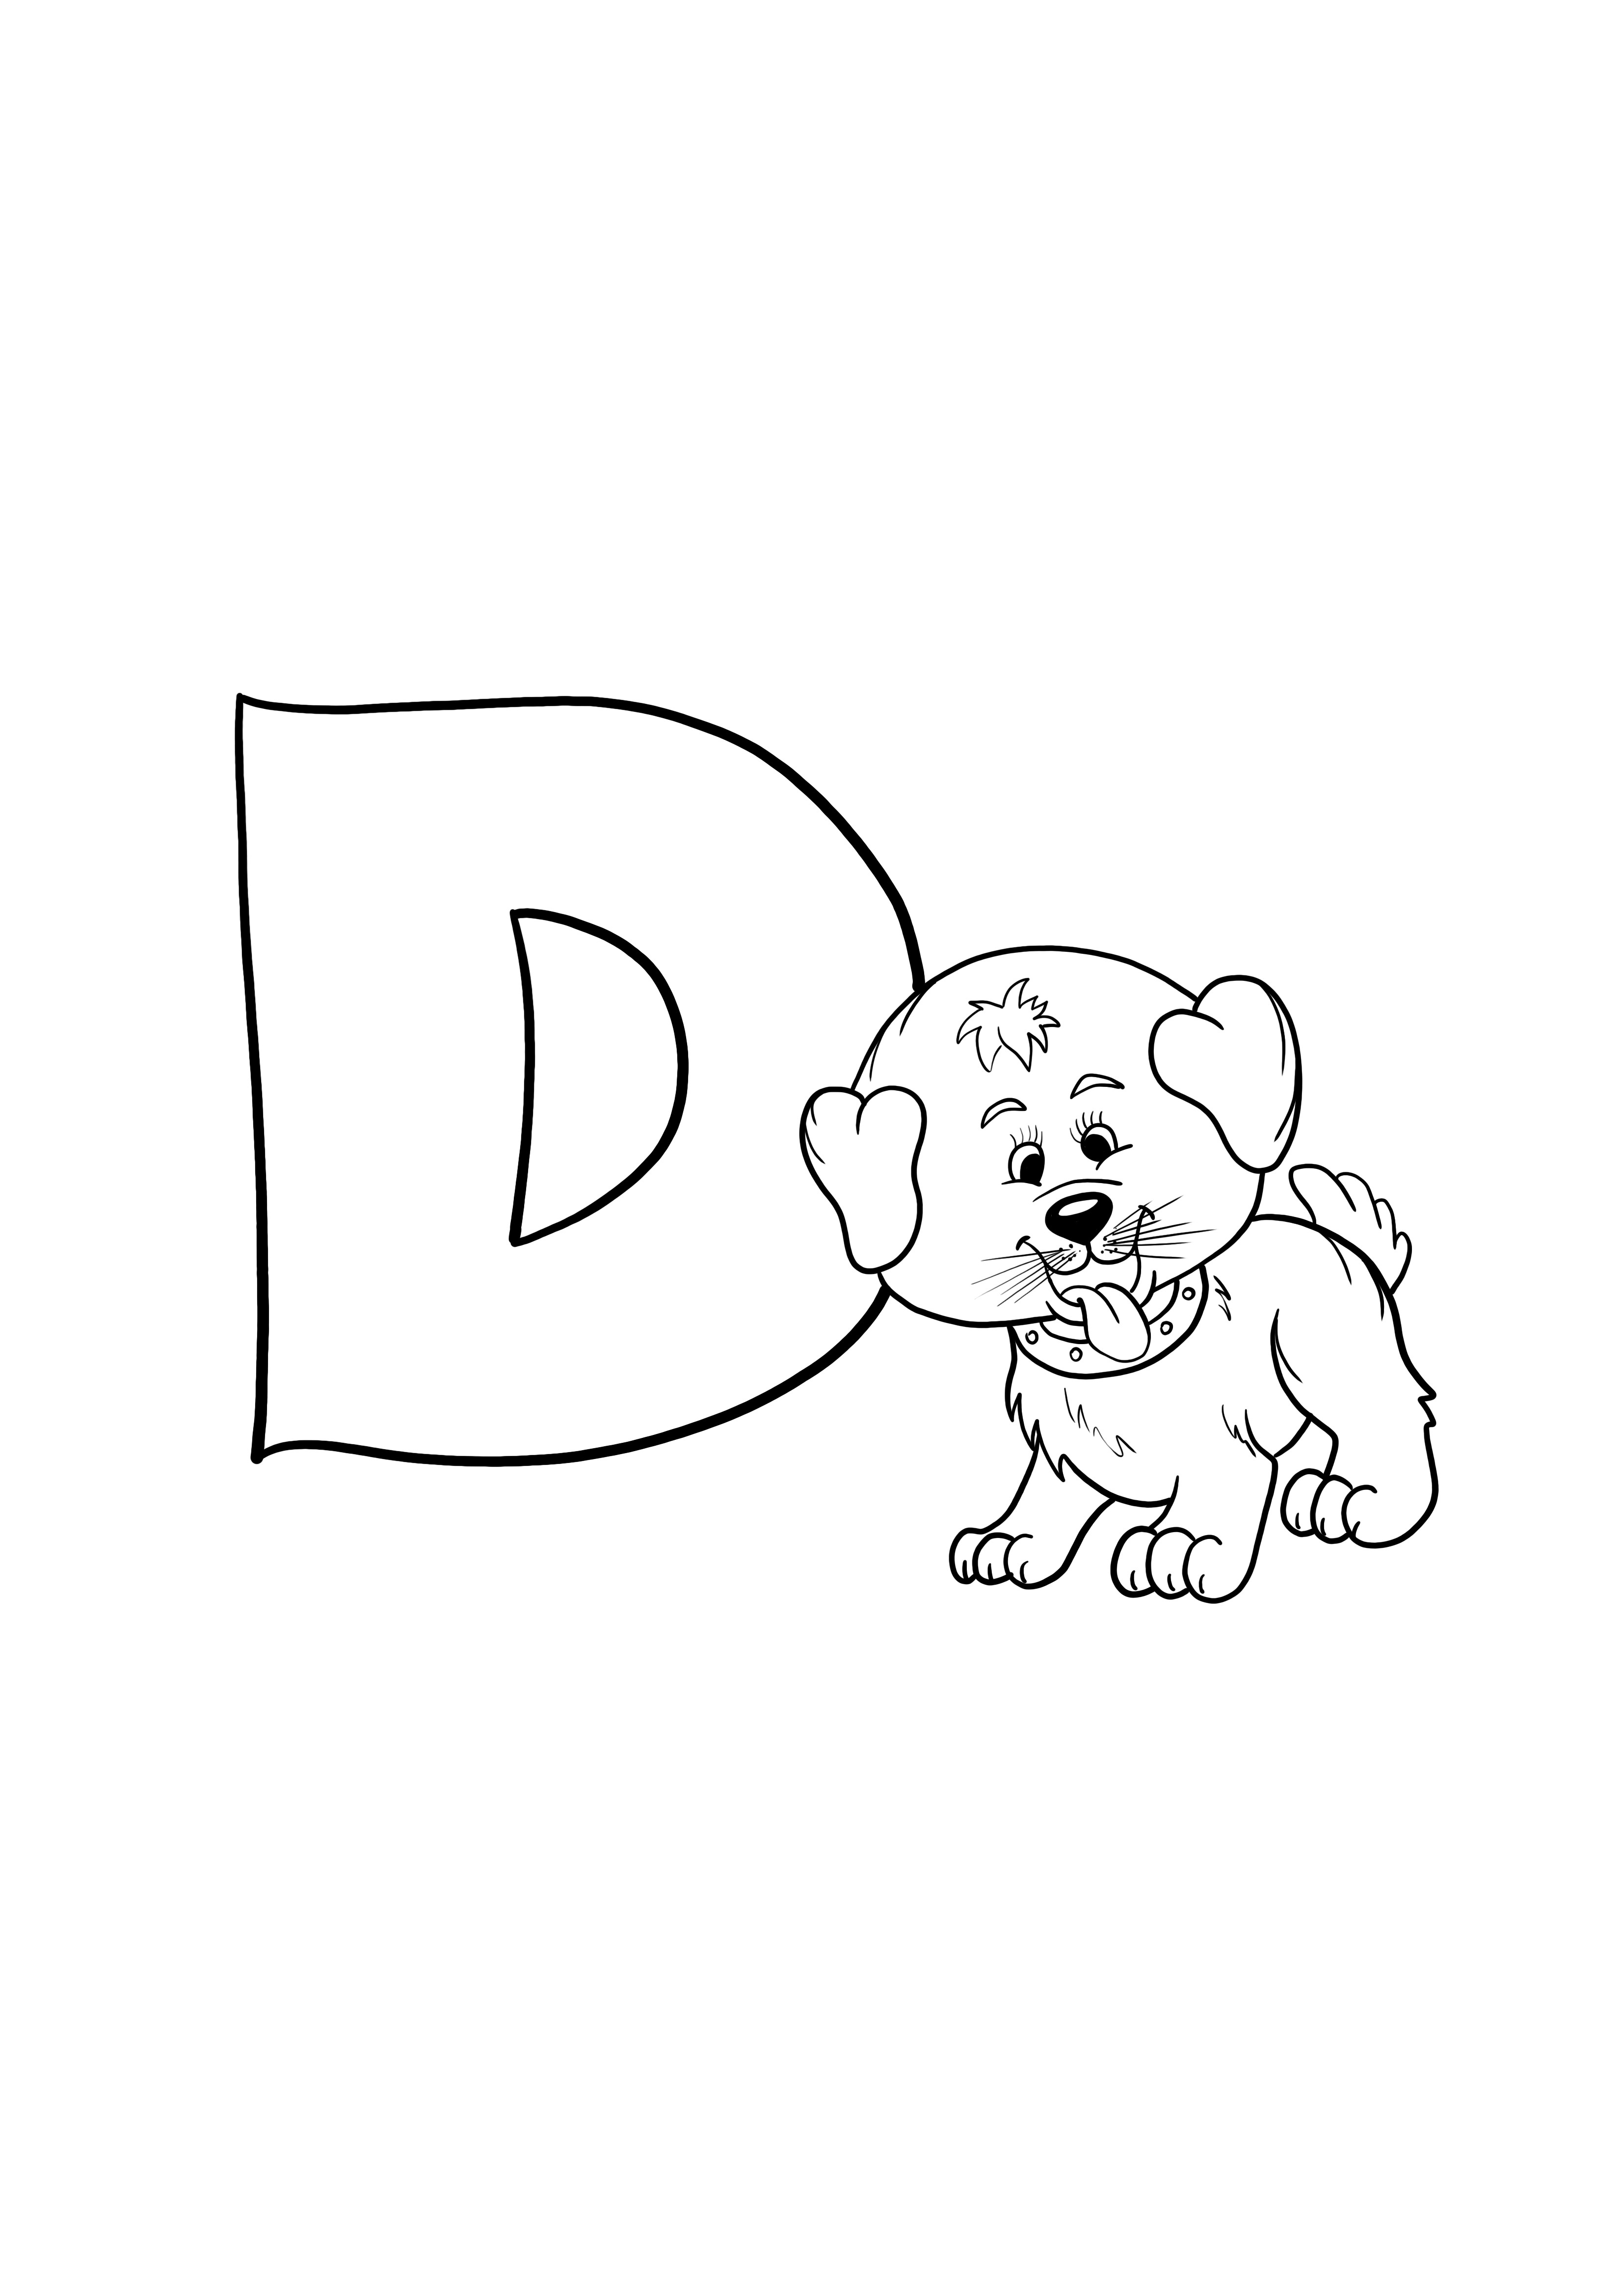 D is voor hondenbrief voor gratis afdrukken kleurplaat